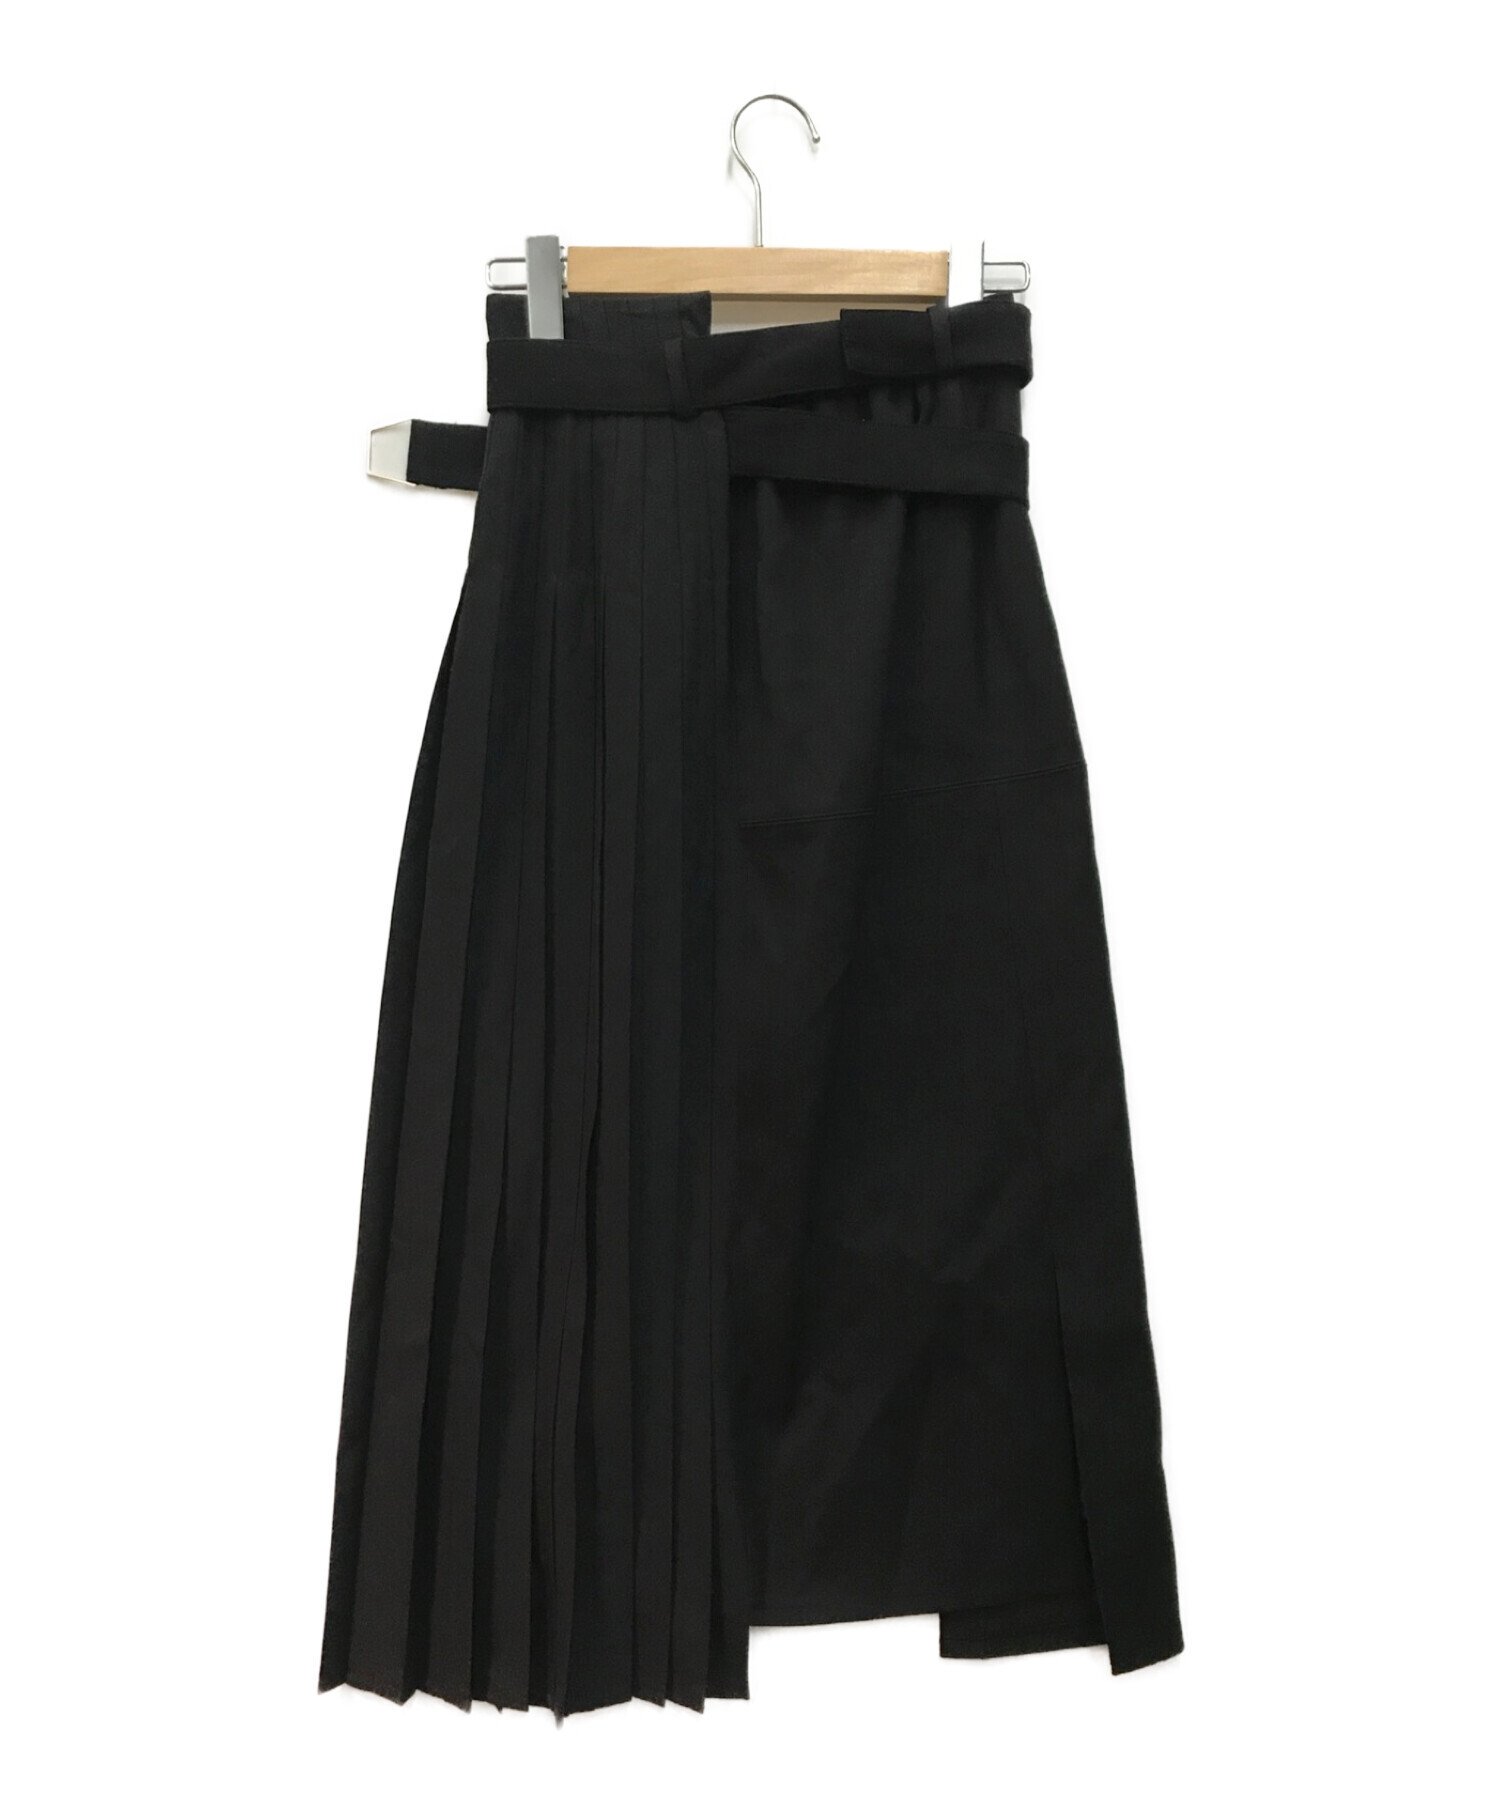 UNITED TOKYO (ユナイテッドトウキョウ) ハーフプリーツスカート ブラック サイズ:2